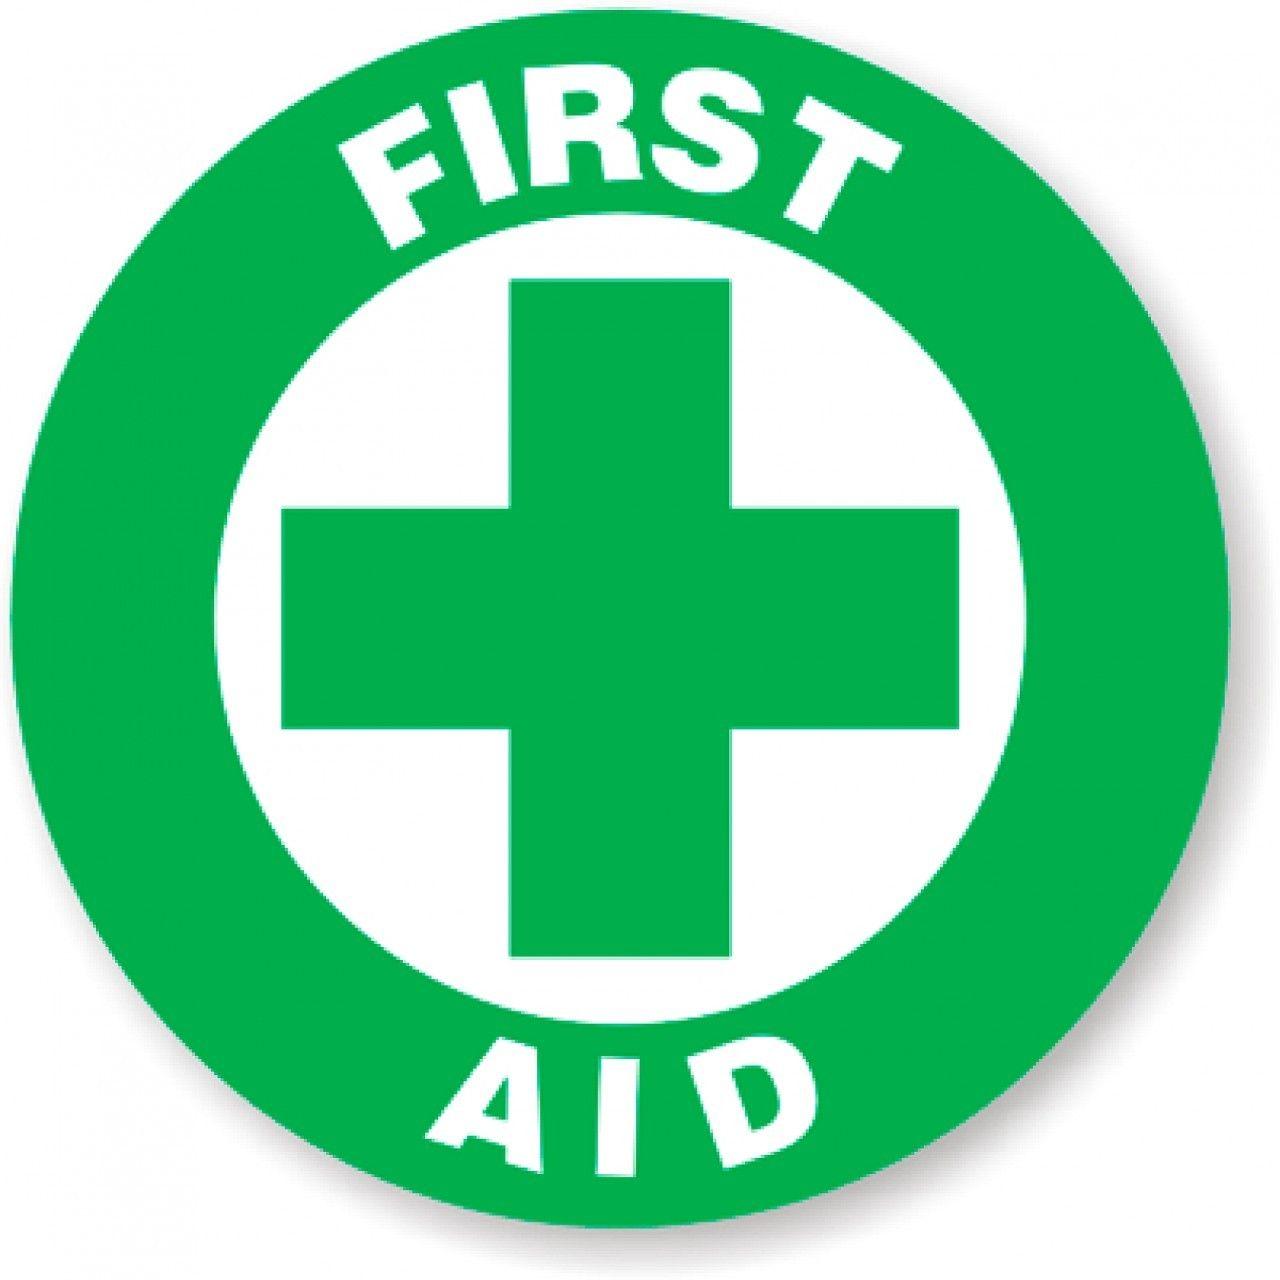 First Aid Box Logo - Free First Aid Clipart, Download Free Clip Art, Free Clip Art on ...